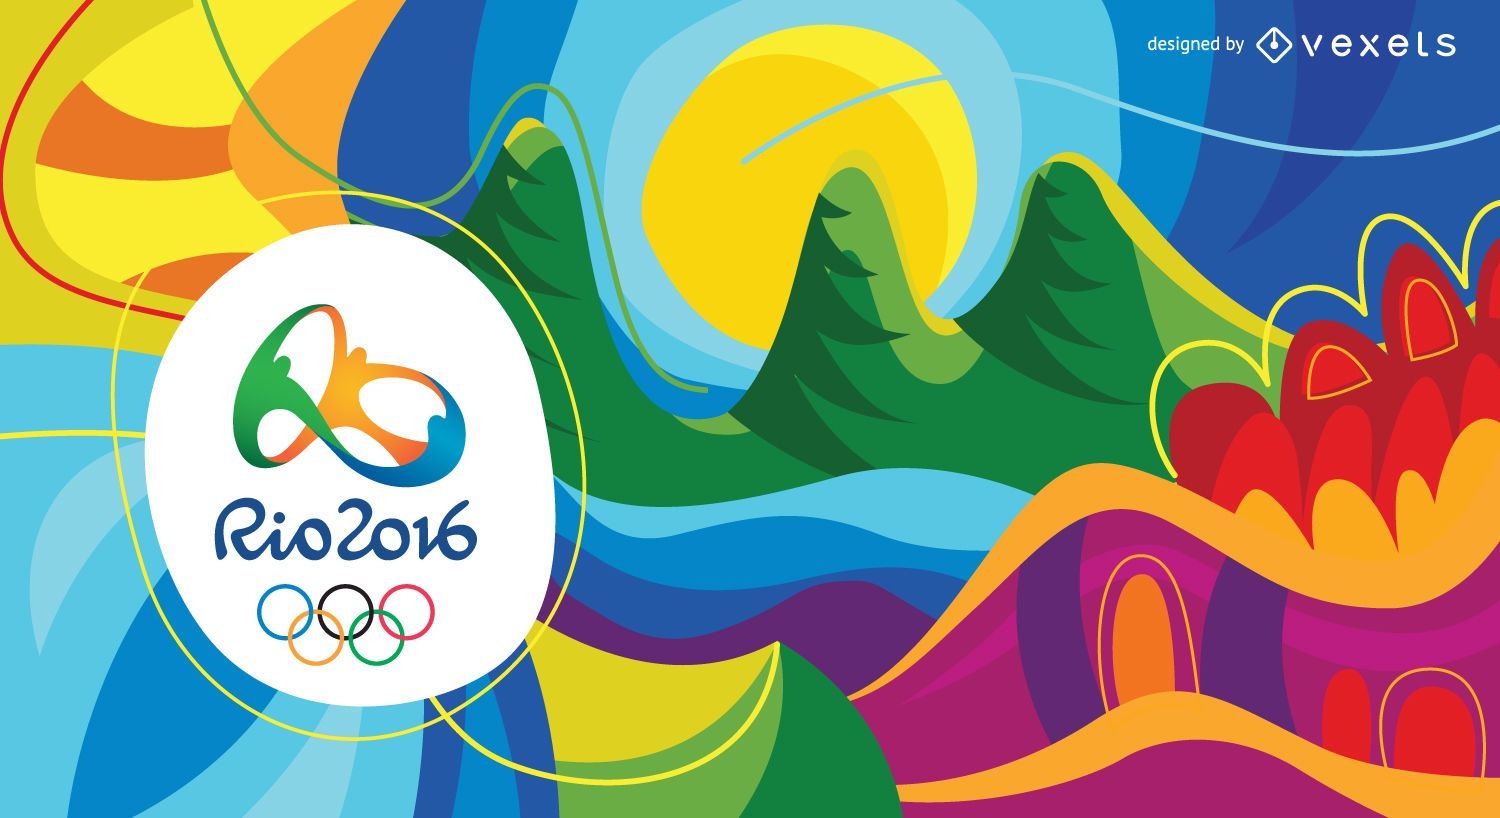 Fondo abstracto colorido de los Juegos Olímpicos Rio 2016